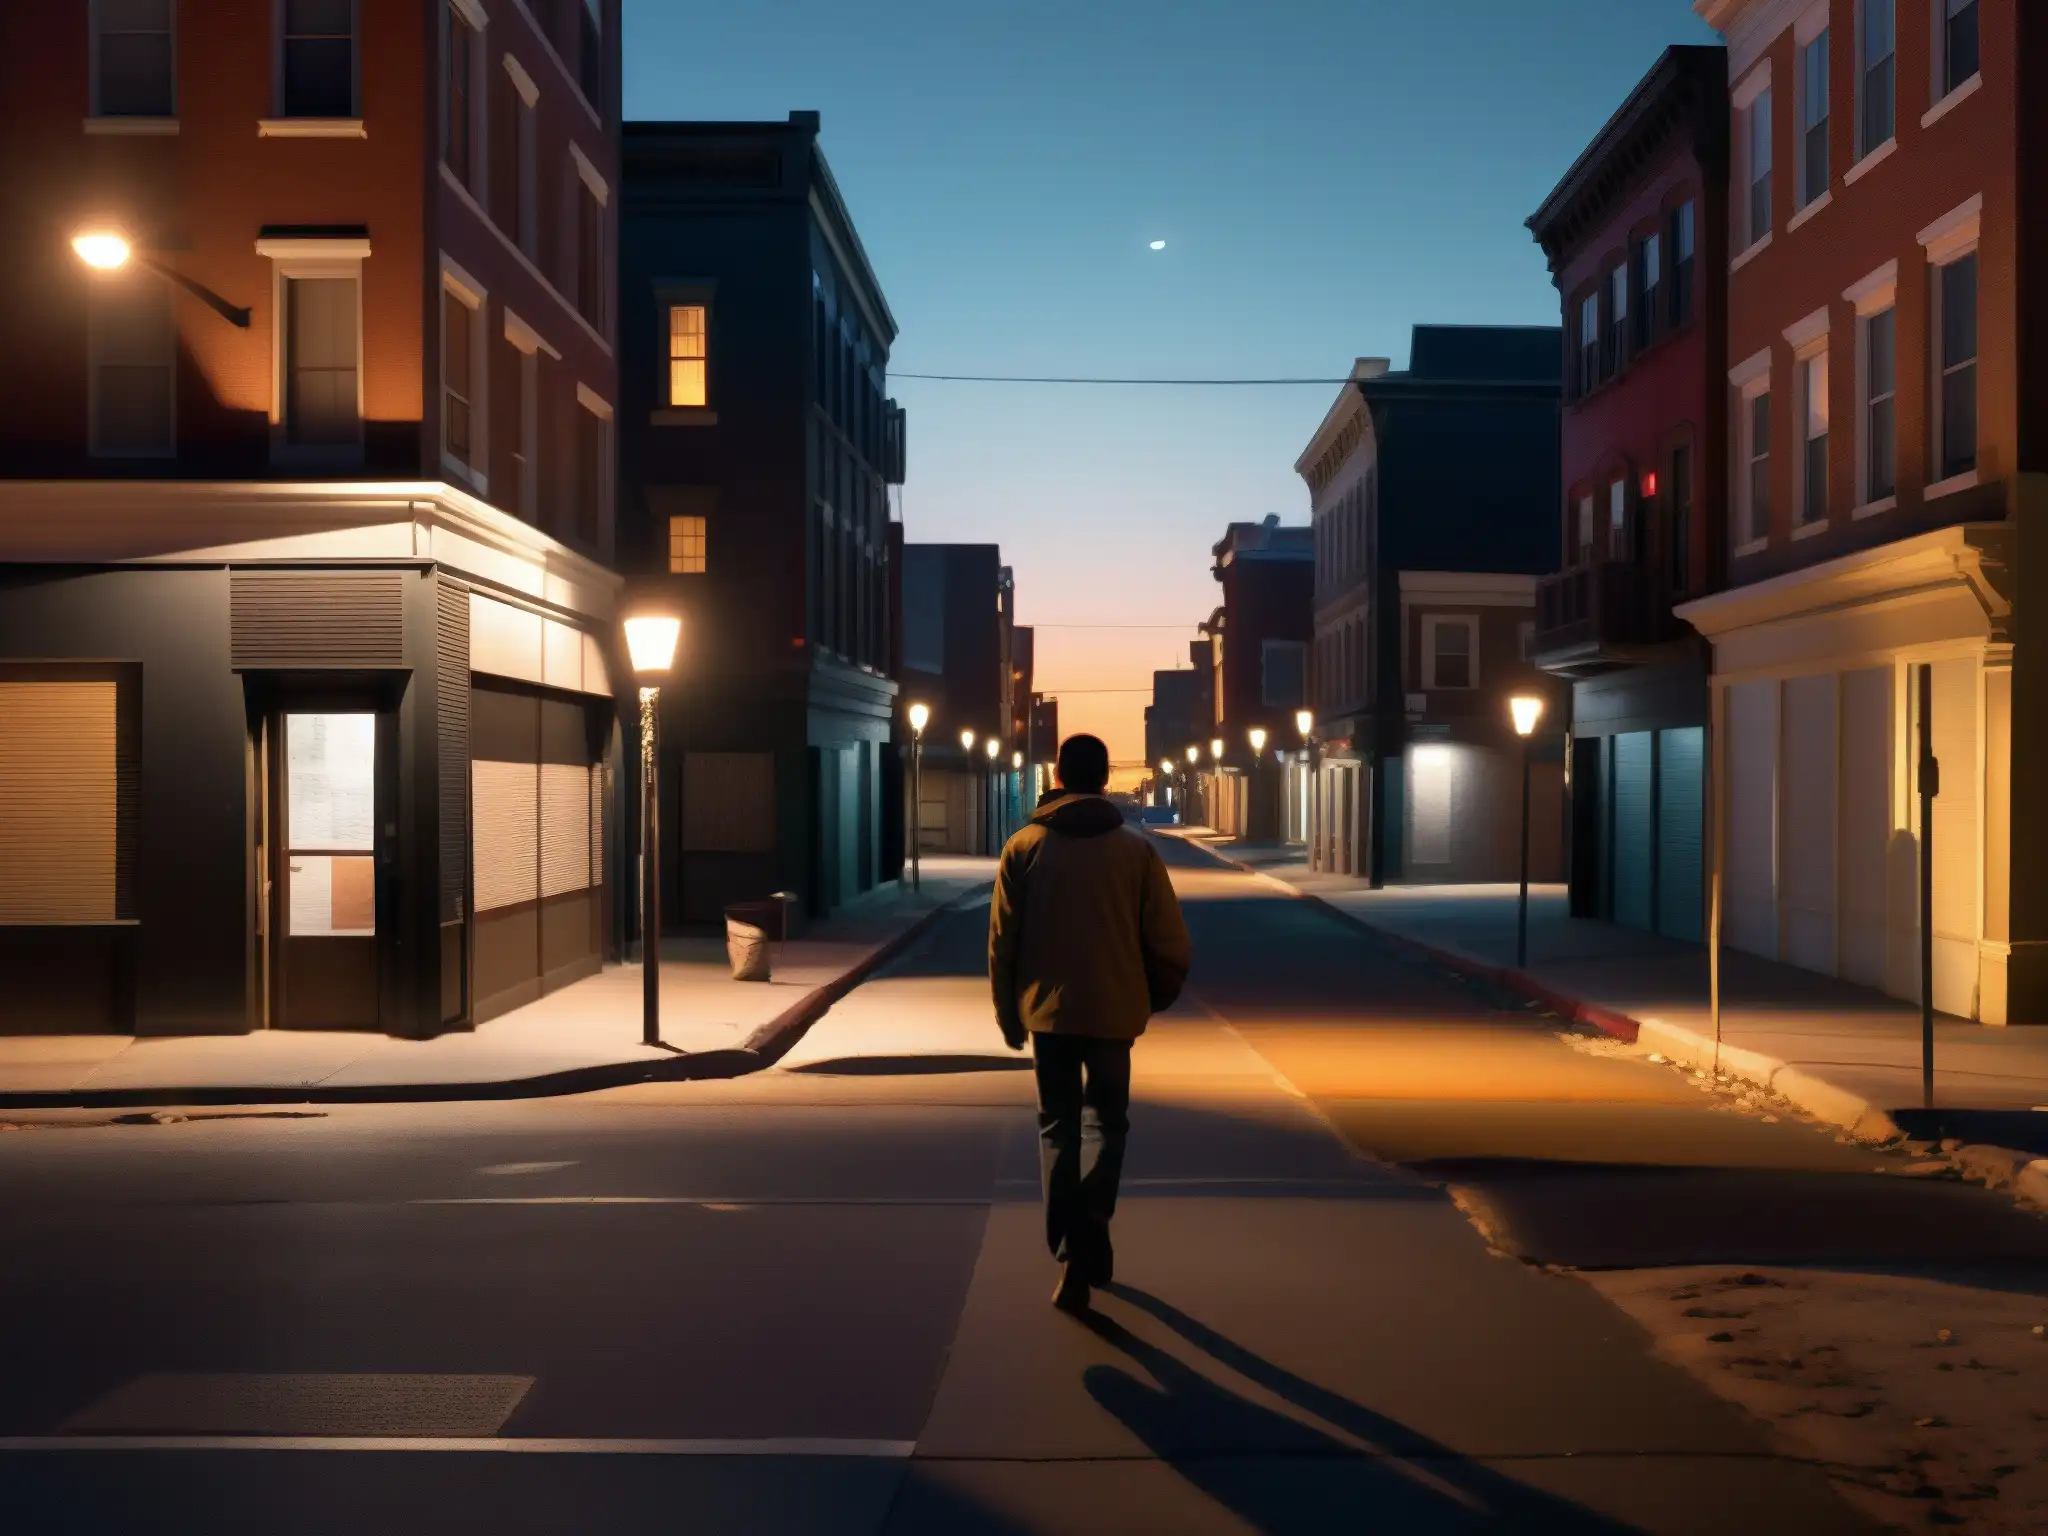 Un solitario camina en una oscura calle urbana